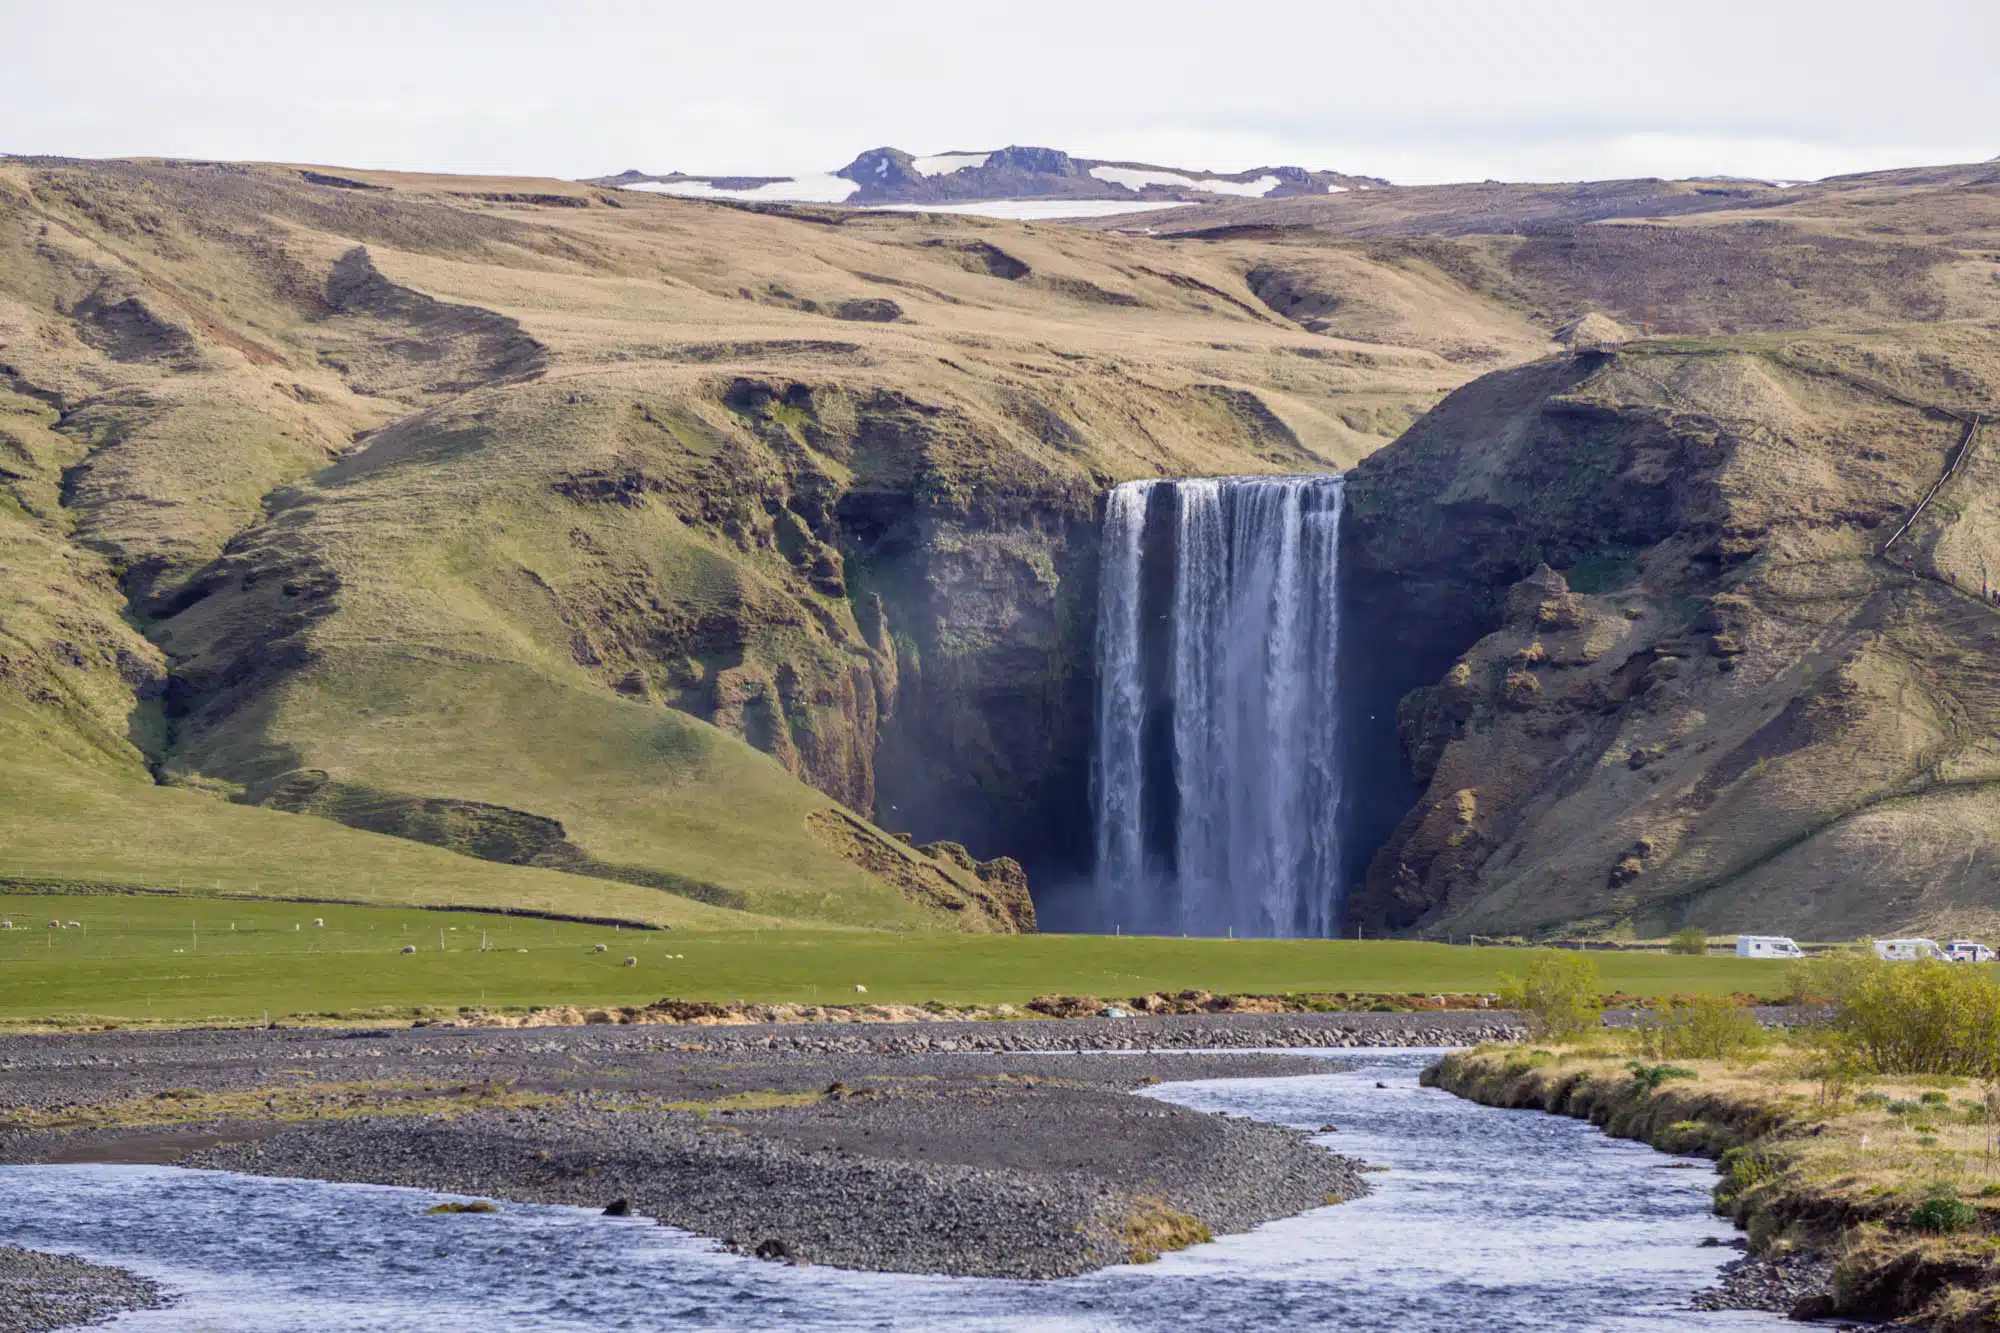 Rondreis IJsland - Onze route in 1 week